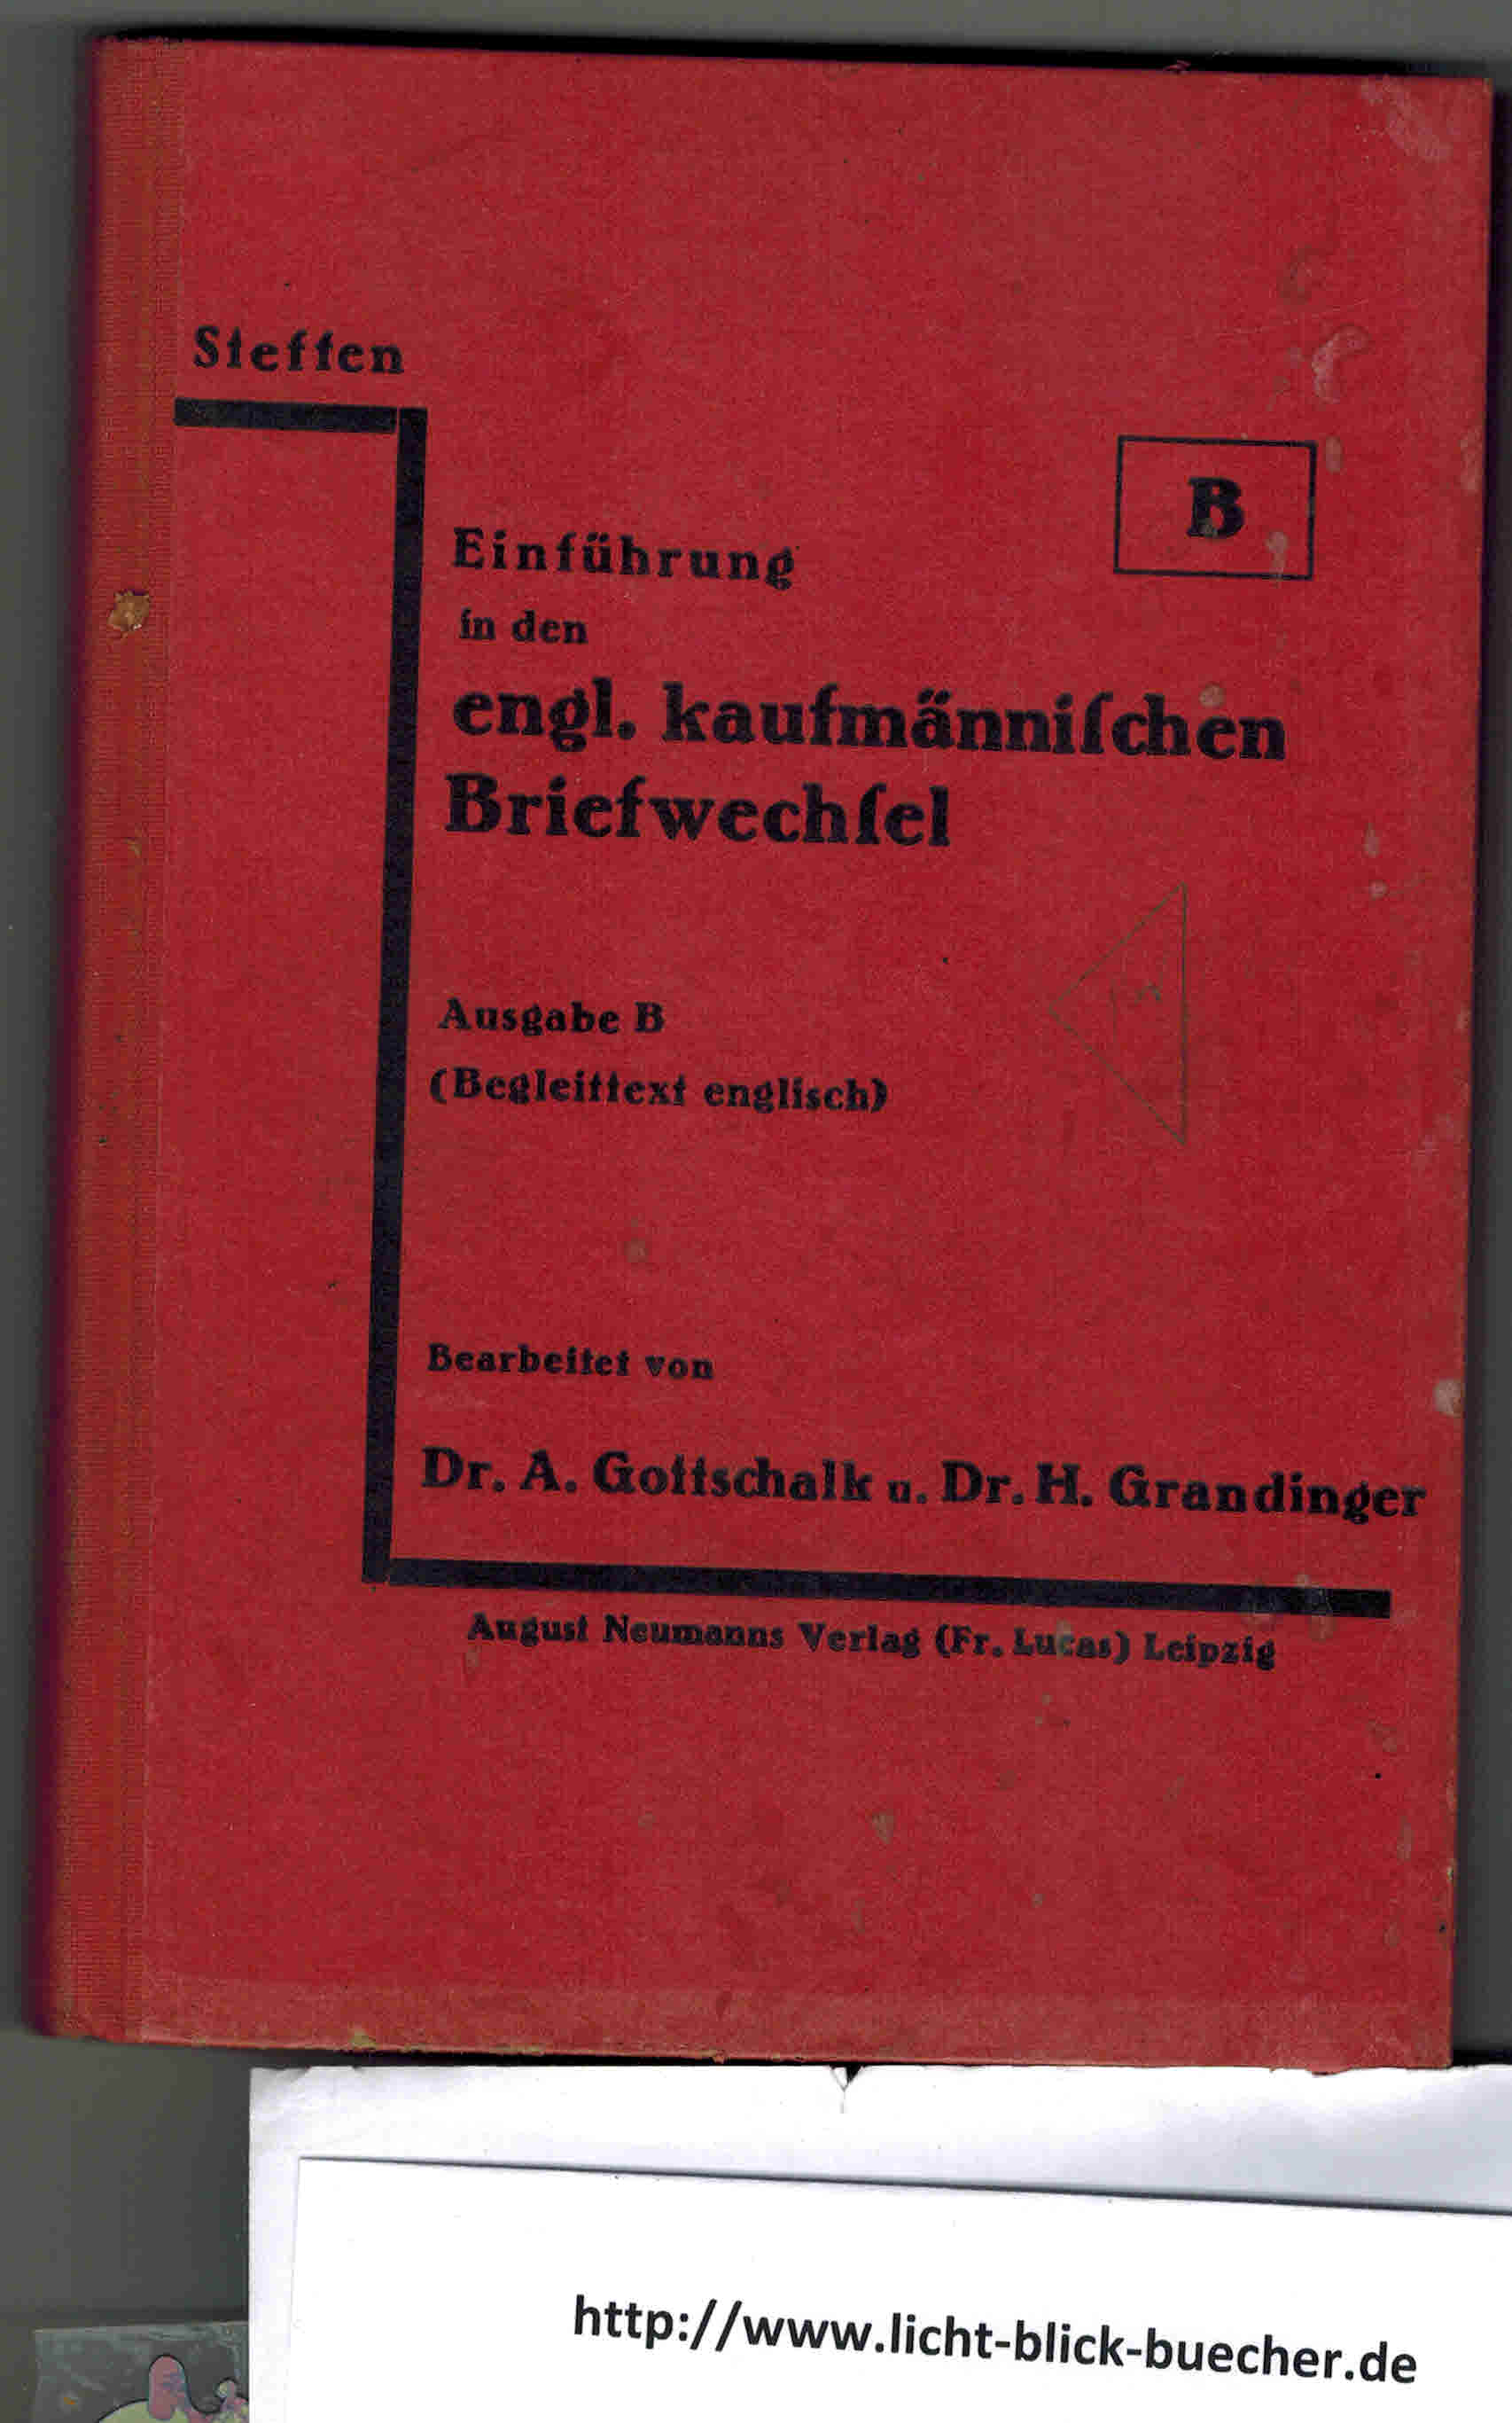 Einfuehrung in den engl. kaufmaennischen Briefwechsel  Ausgabe Bvon Prof. Dr. Max Steffen